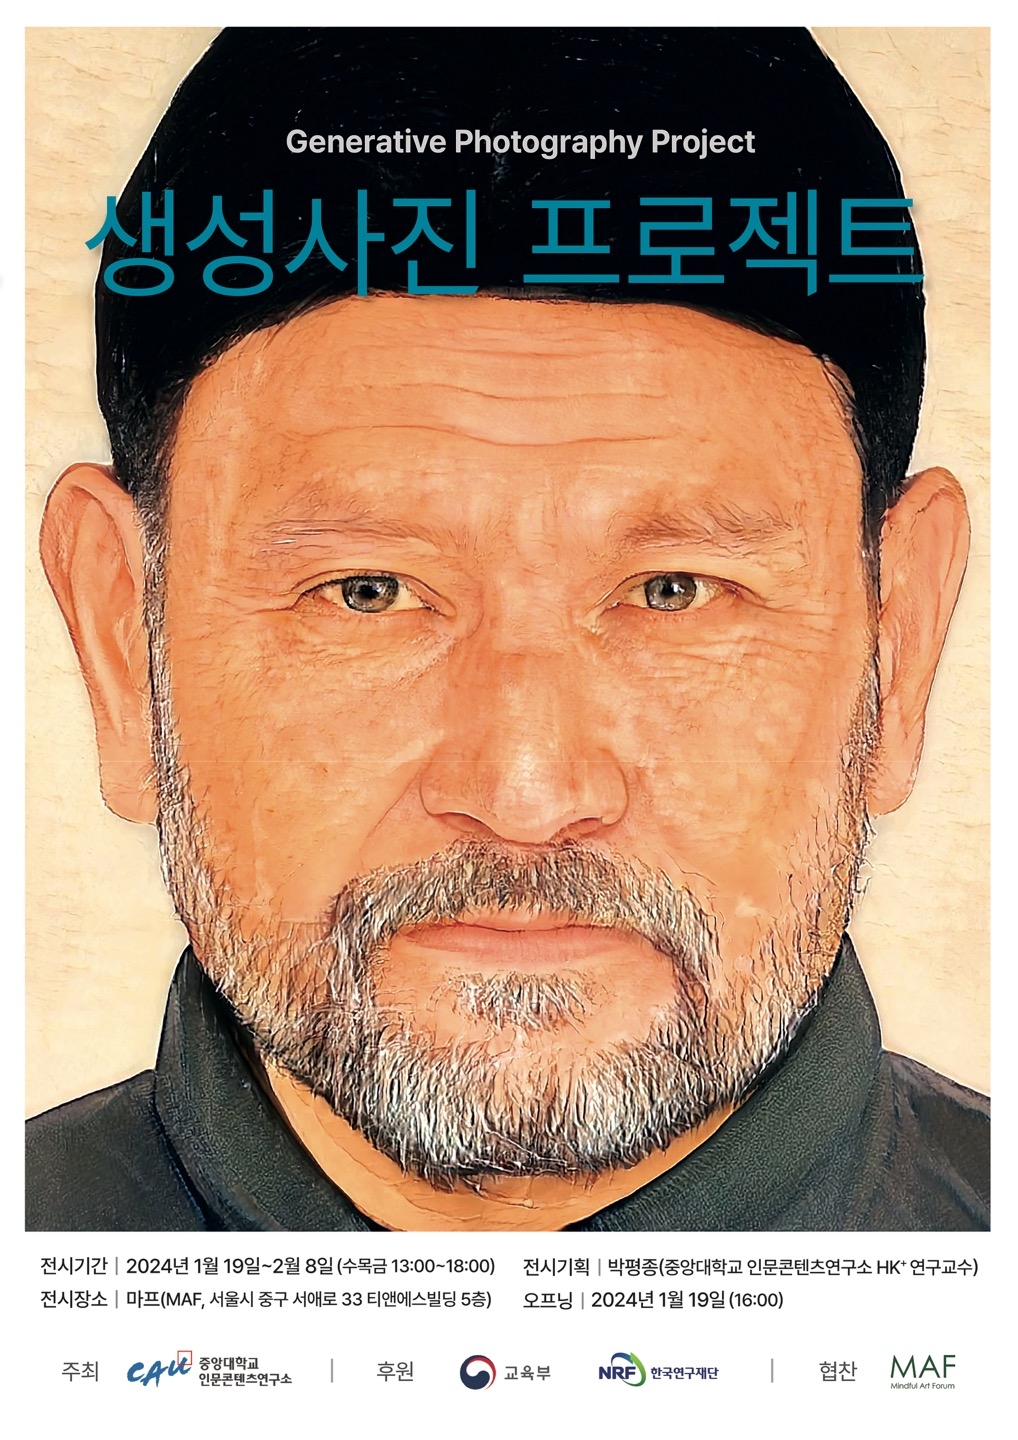 박평종 중앙대 교수의 ‘생성사진 프로젝트’ 사진전  포스터